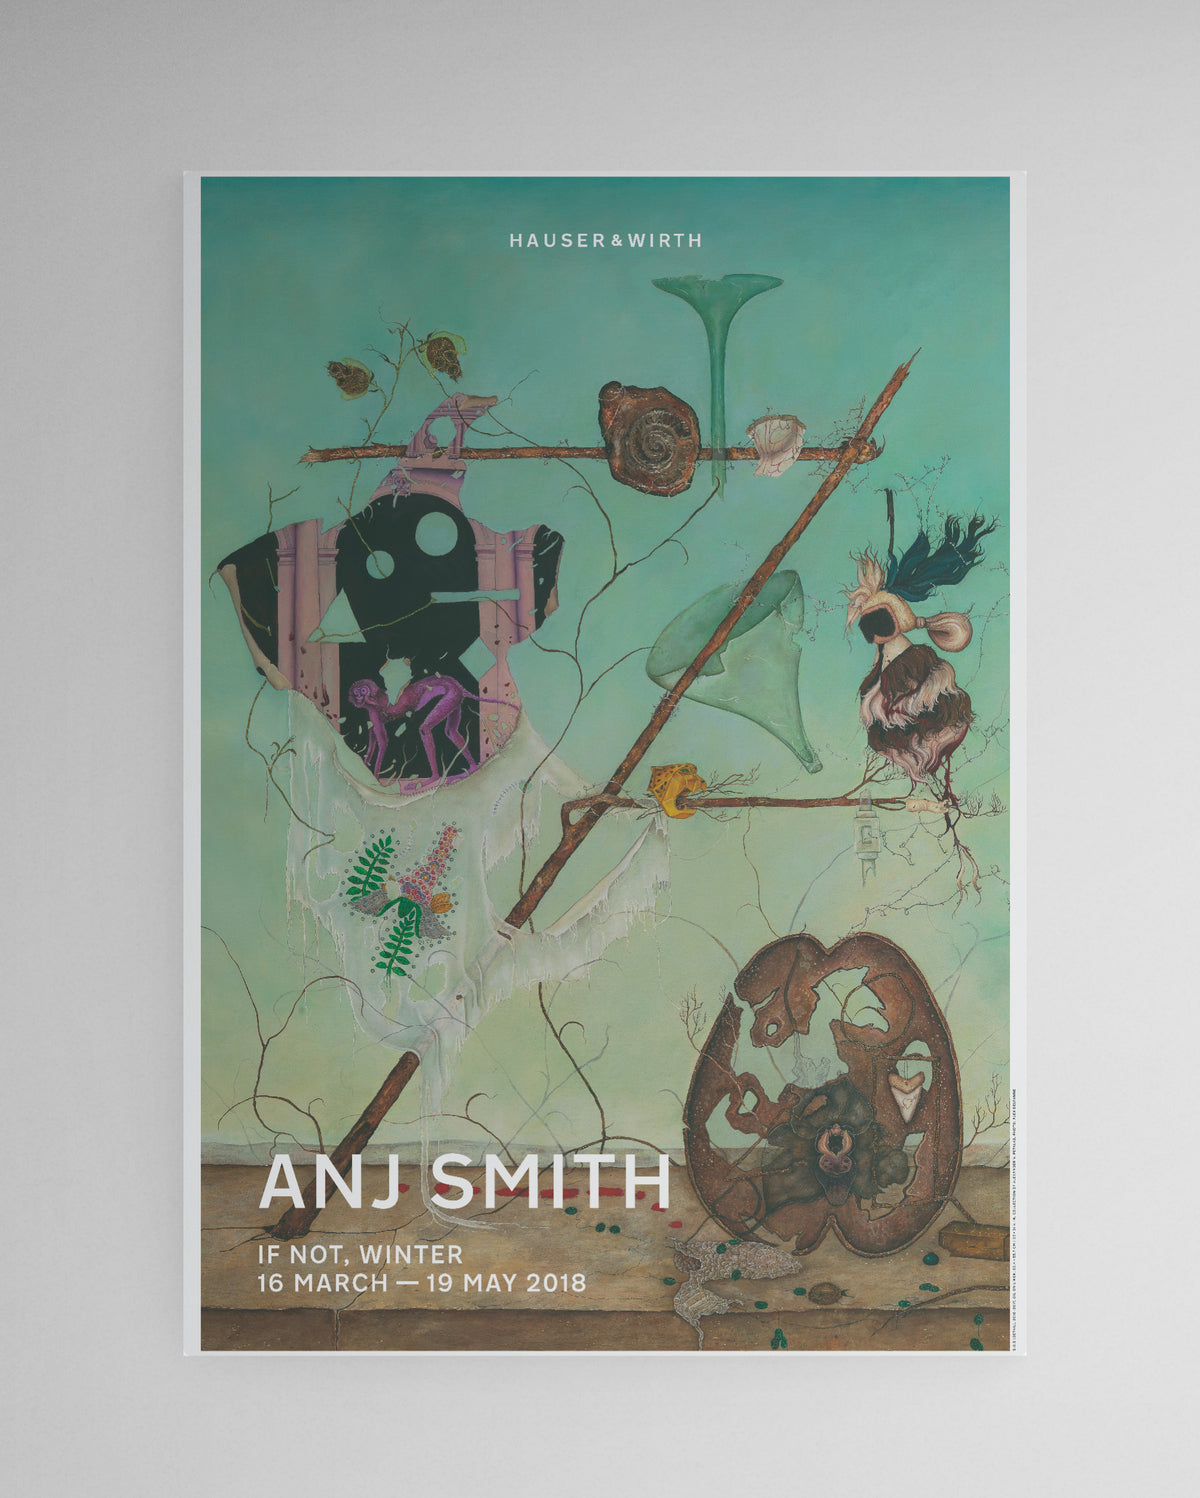 Anj Smith, 2018